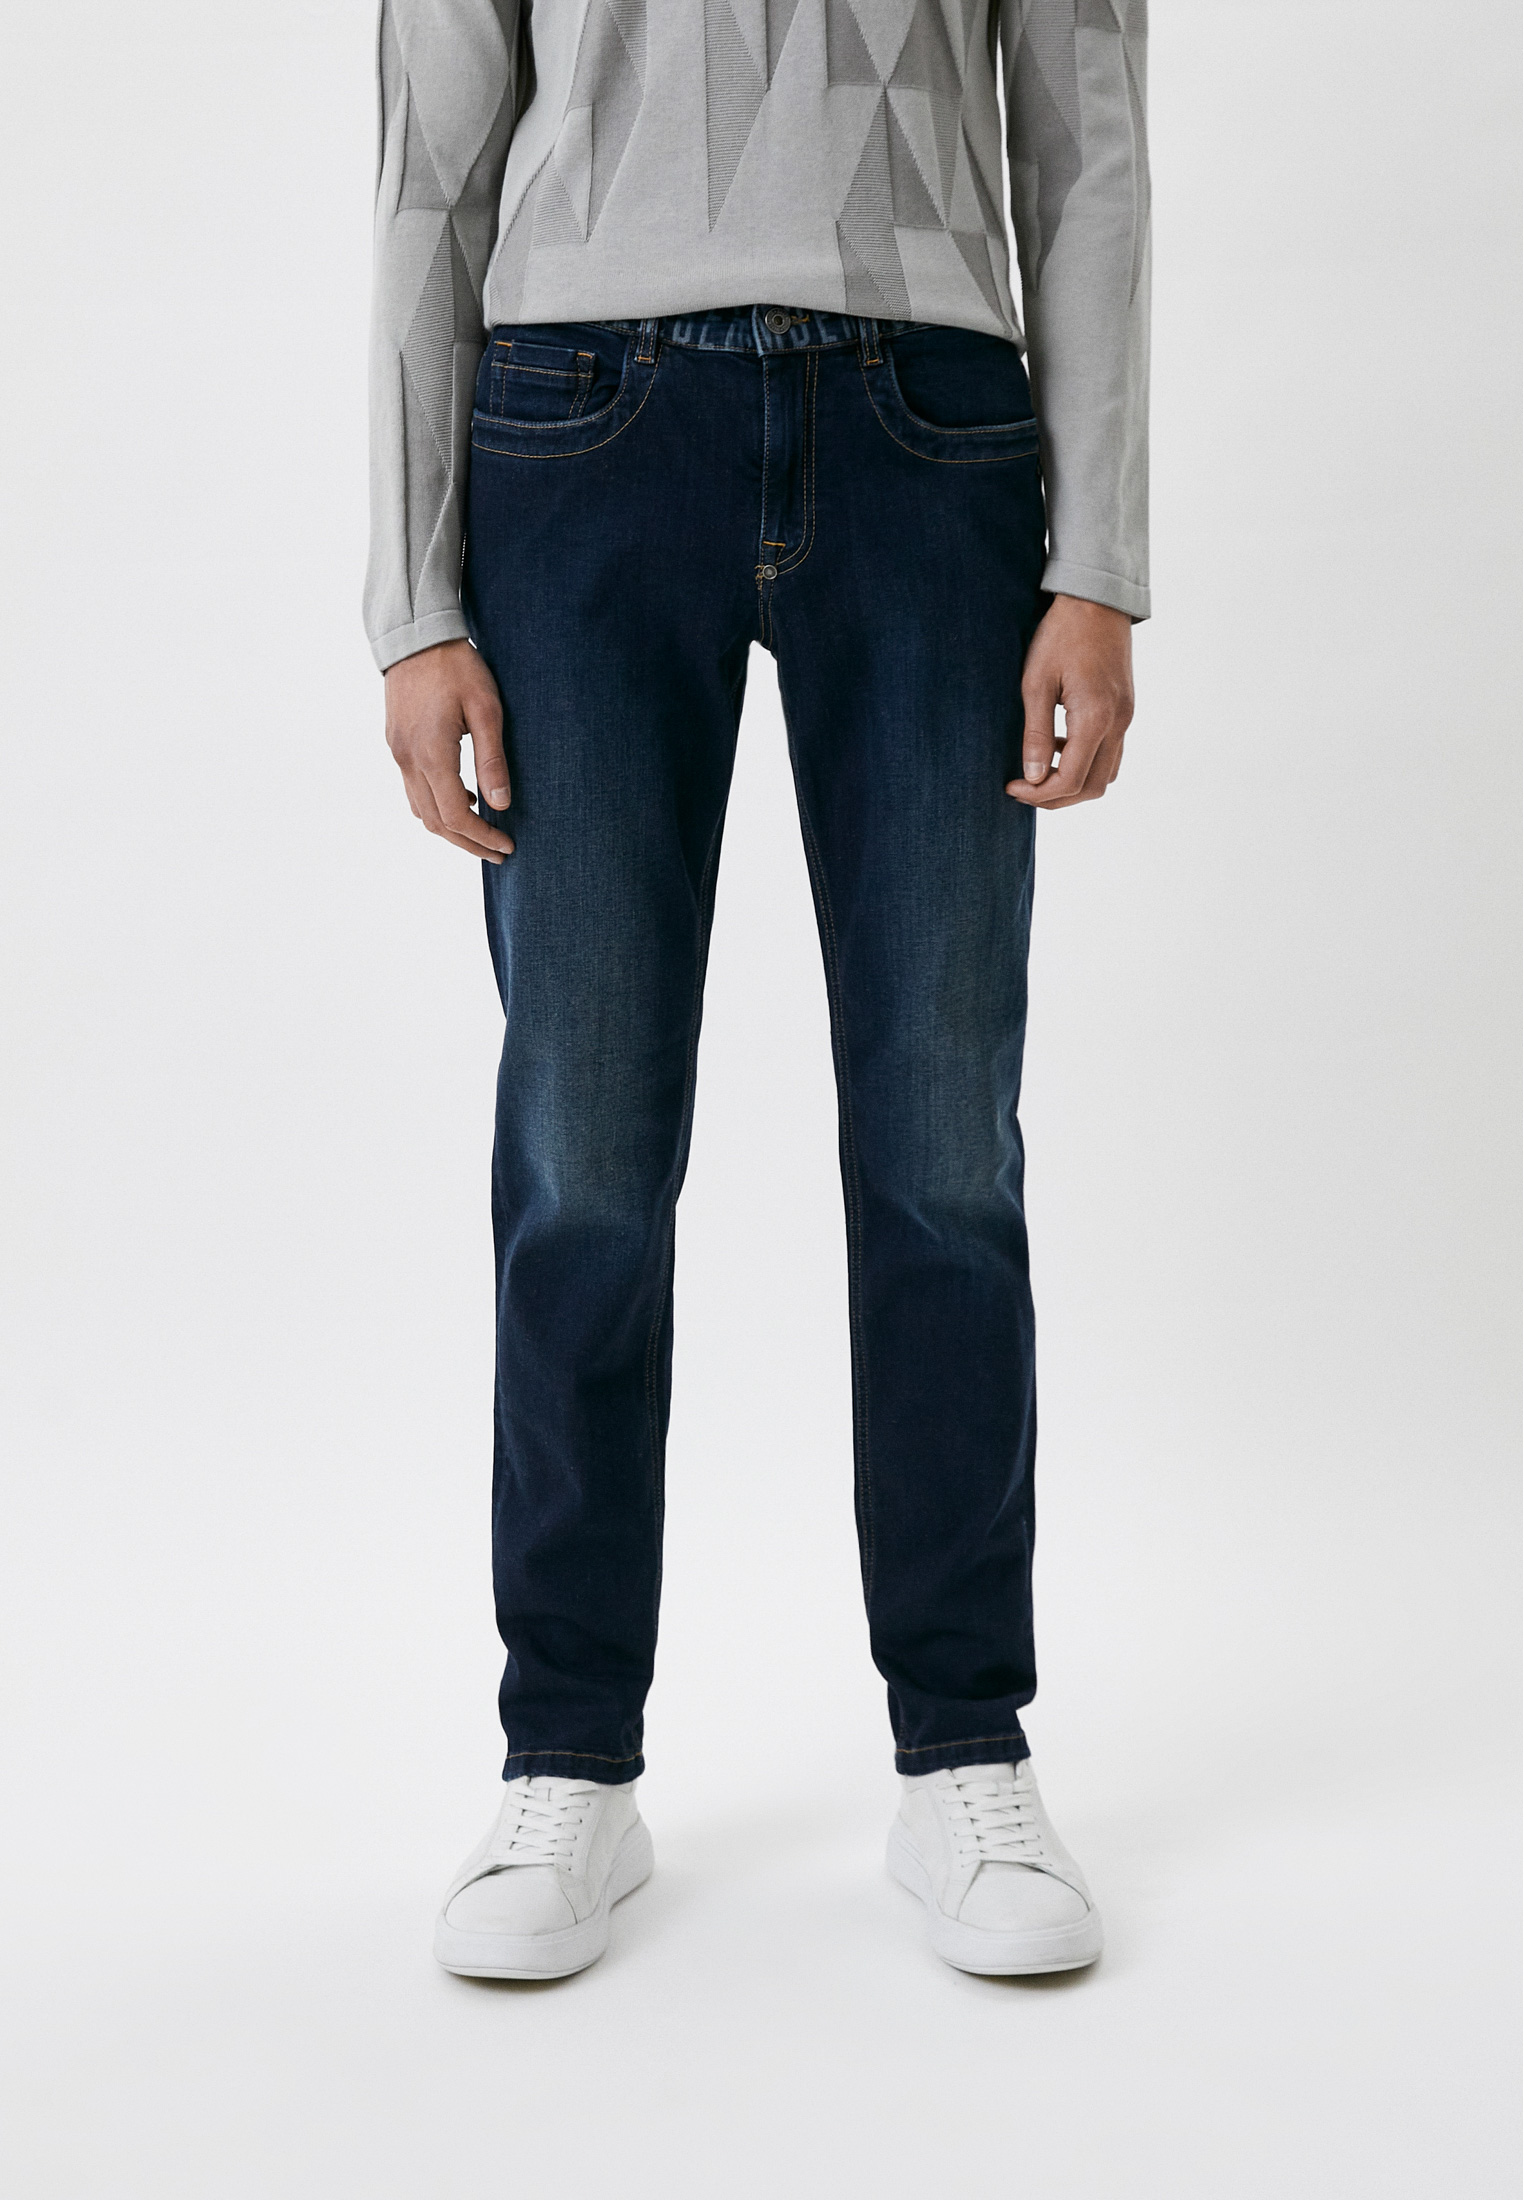 Мужские зауженные джинсы Bikkembergs (Биккембергс) CQ10170S3511: изображение 1